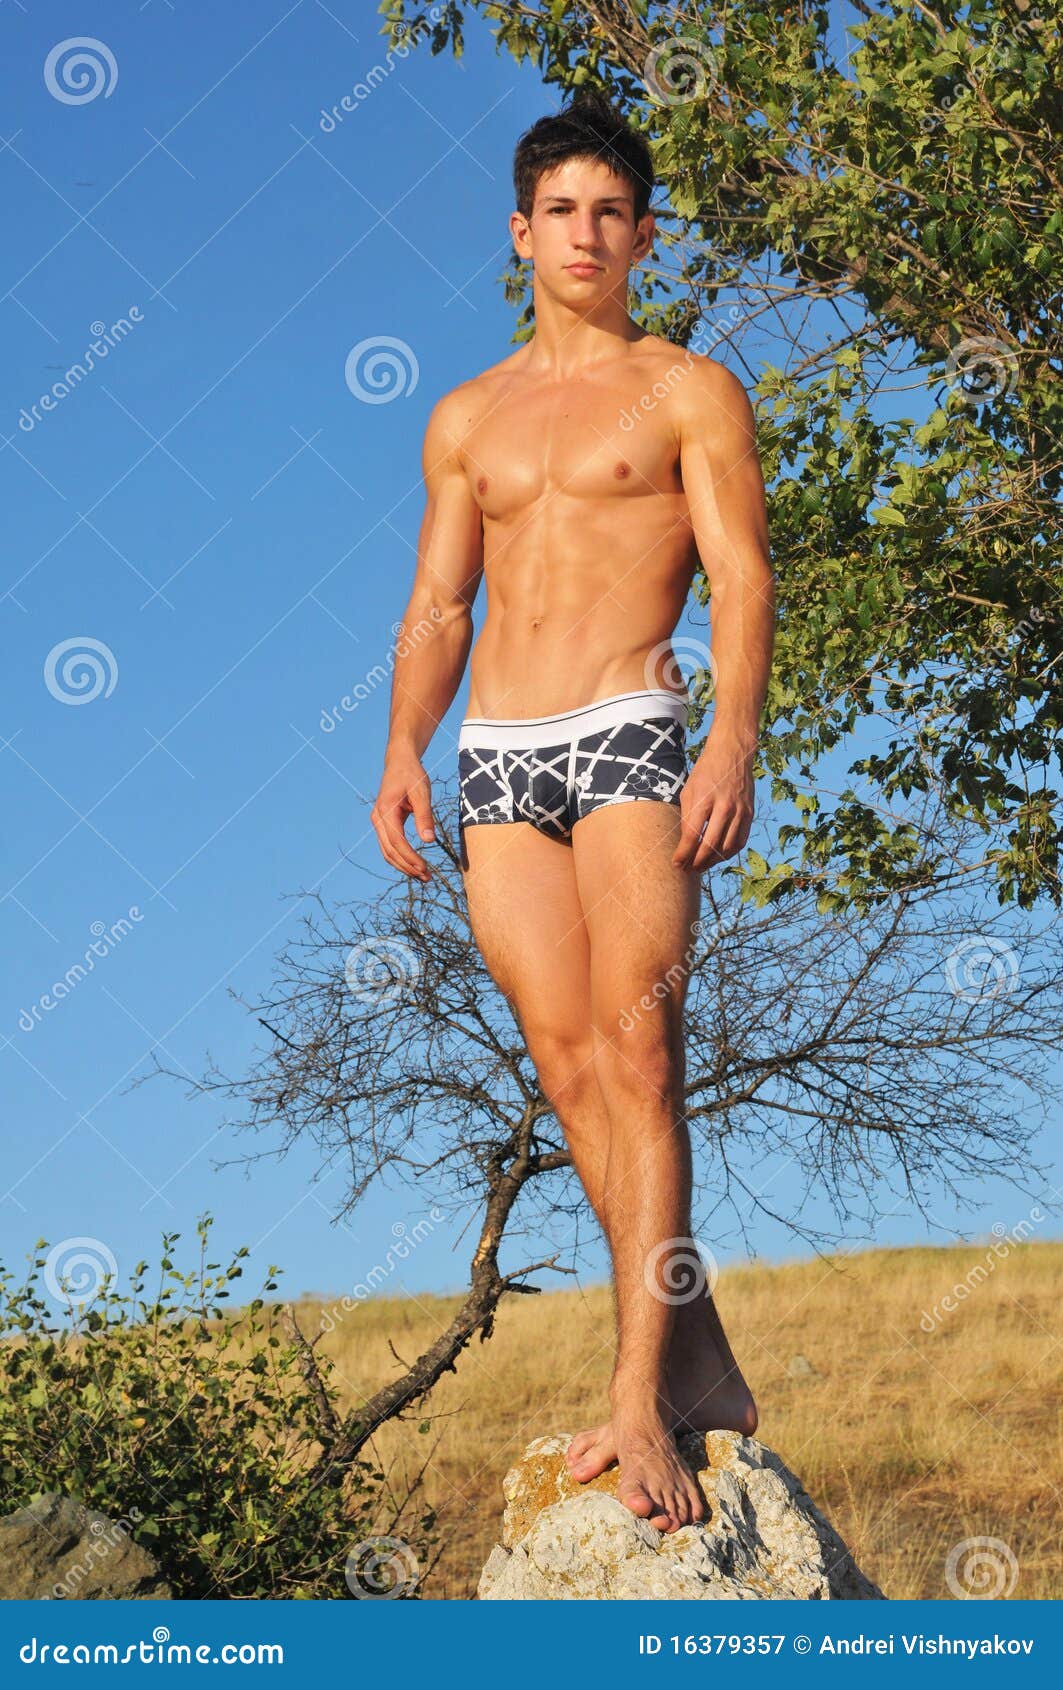 https://thumbs.dreamstime.com/z/male-modeling-underwear-16379357.jpg